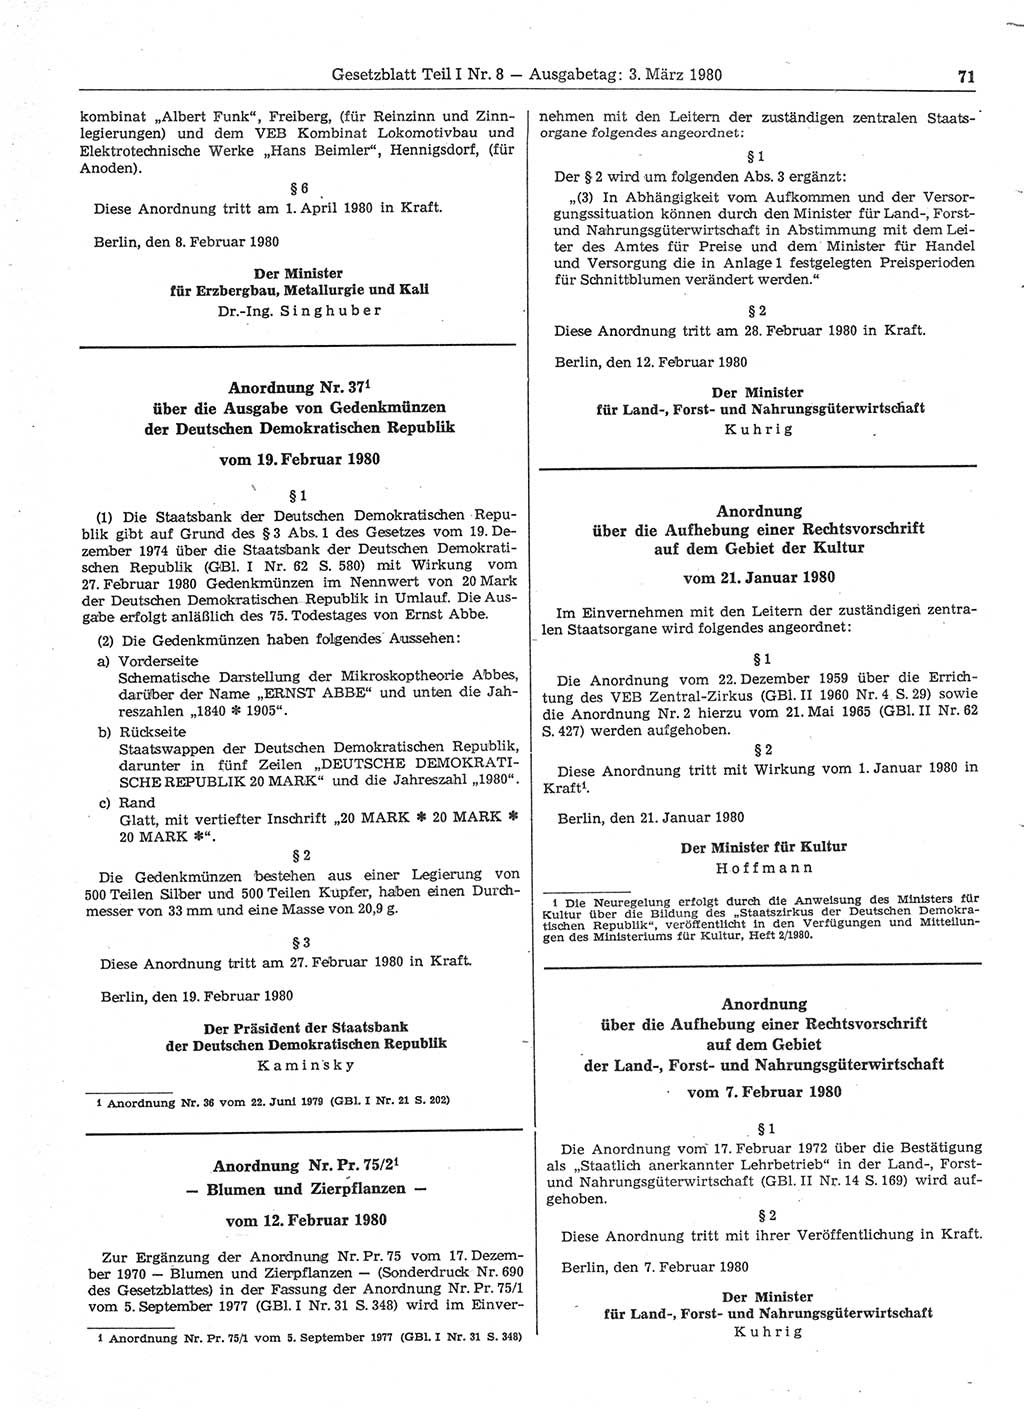 Gesetzblatt (GBl.) der Deutschen Demokratischen Republik (DDR) Teil Ⅰ 1980, Seite 71 (GBl. DDR Ⅰ 1980, S. 71)